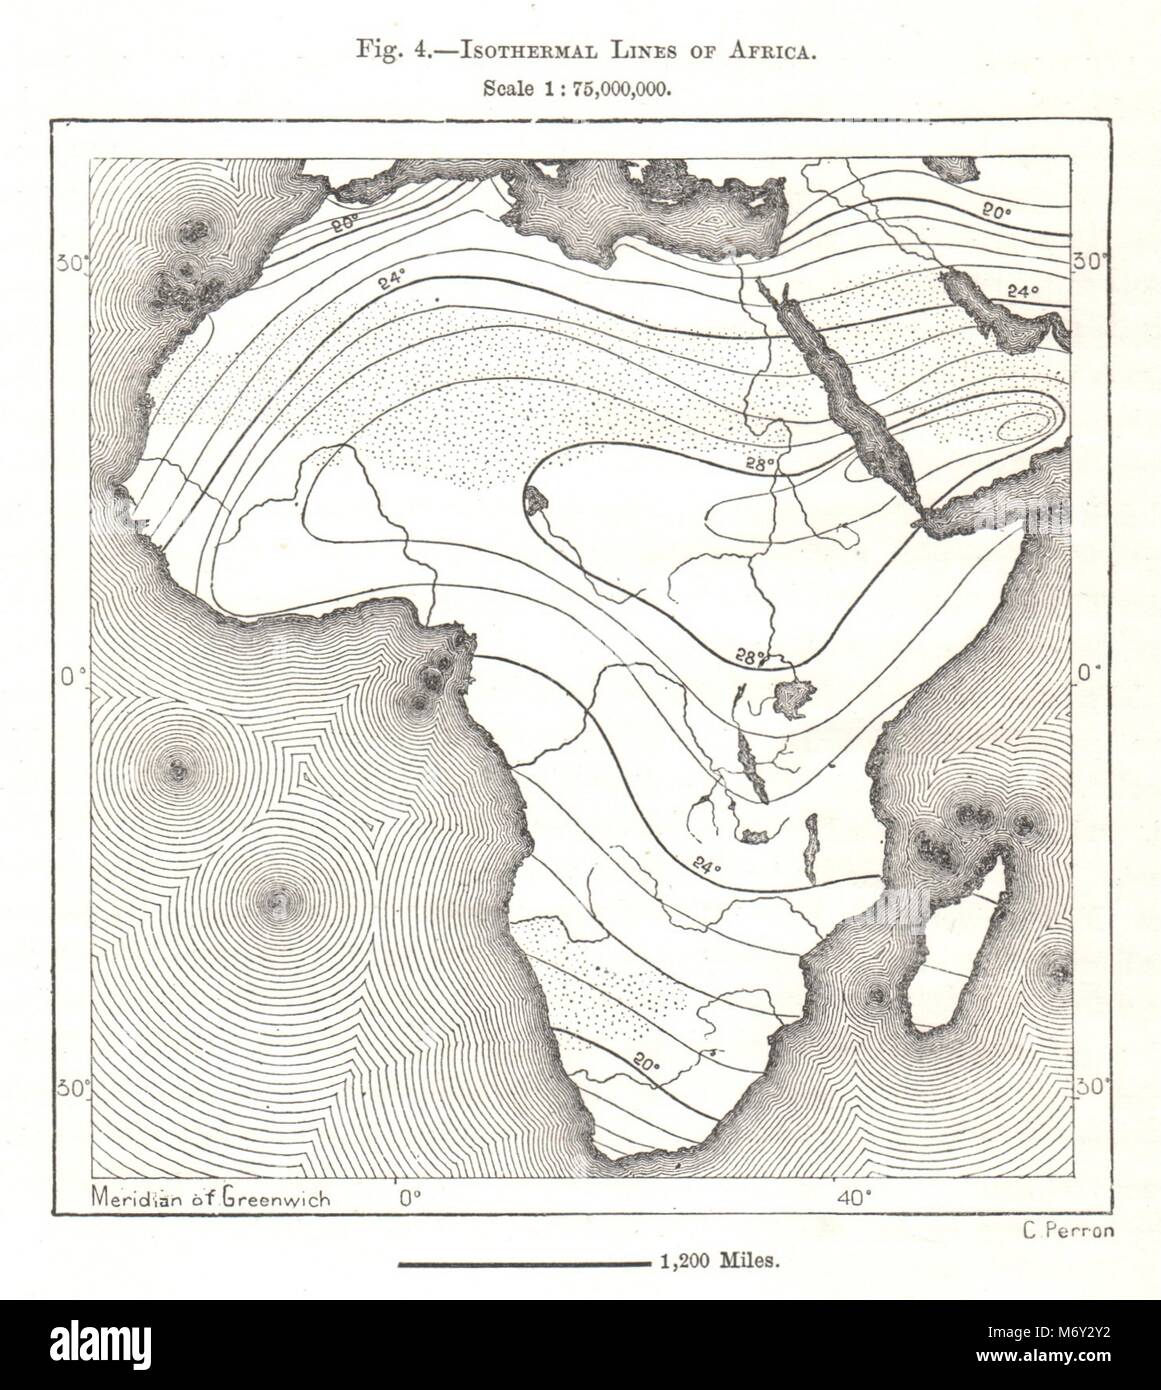 Les lignes isothermes de l'Afrique. Croquis 1885 ancienne carte plan vintage Banque D'Images